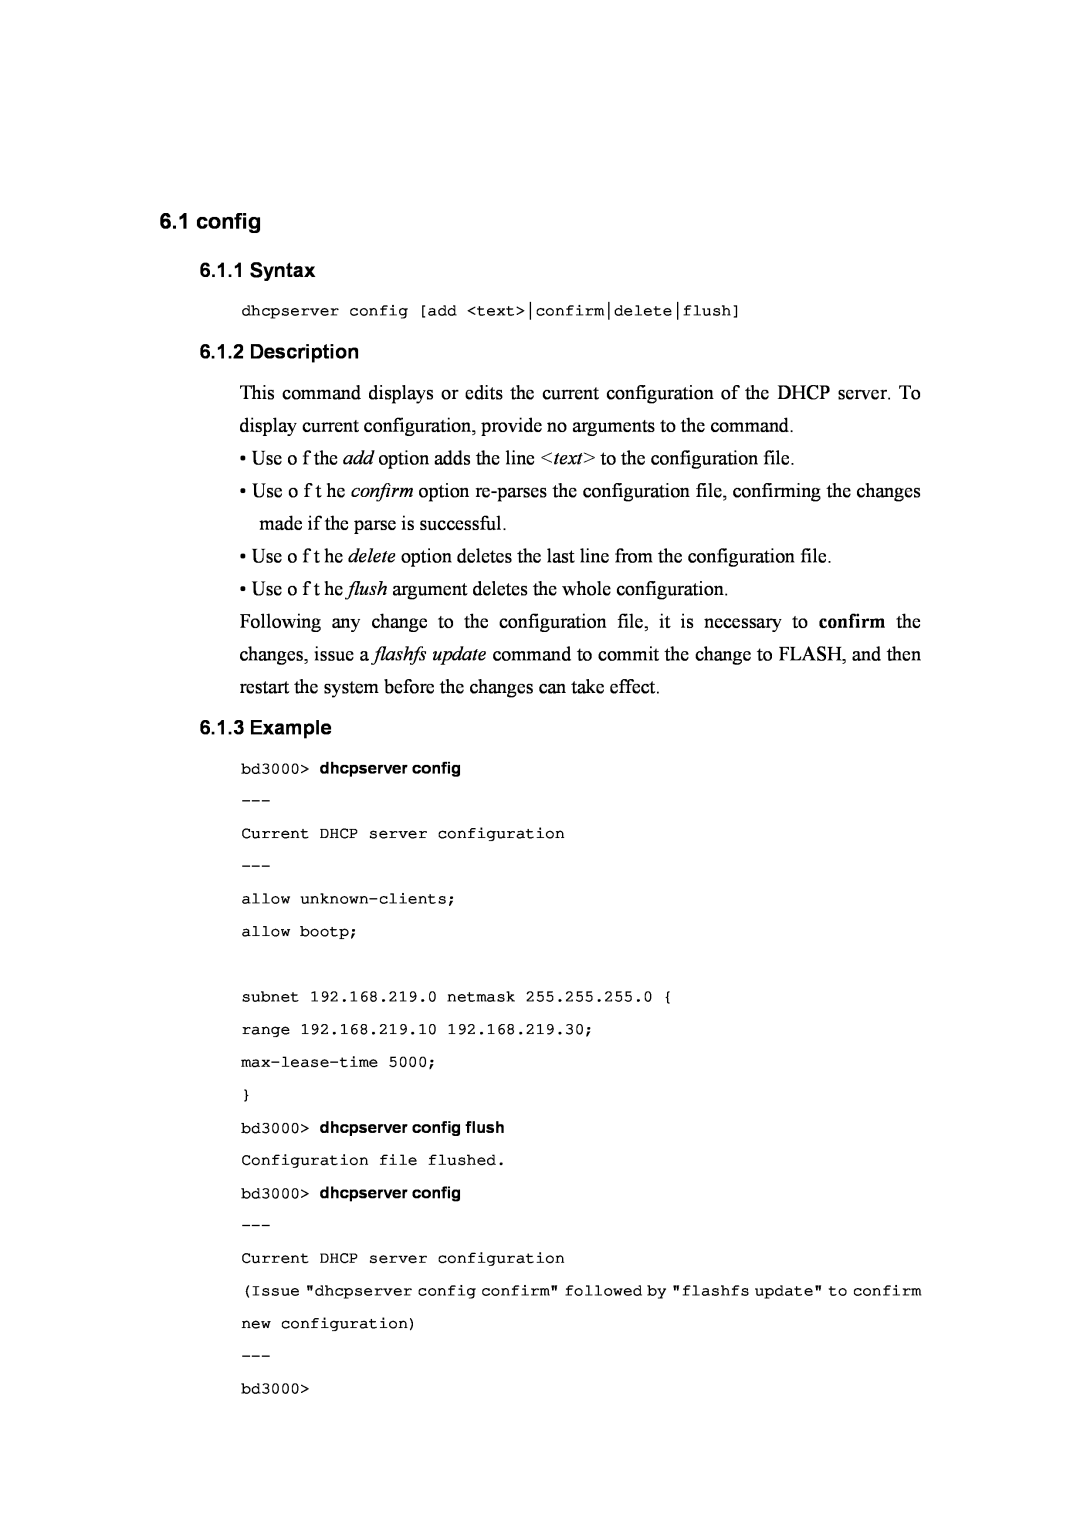 Atlantis Land A02-RA(Atmos)_ME01 manual config, Syntax, Description, Example 